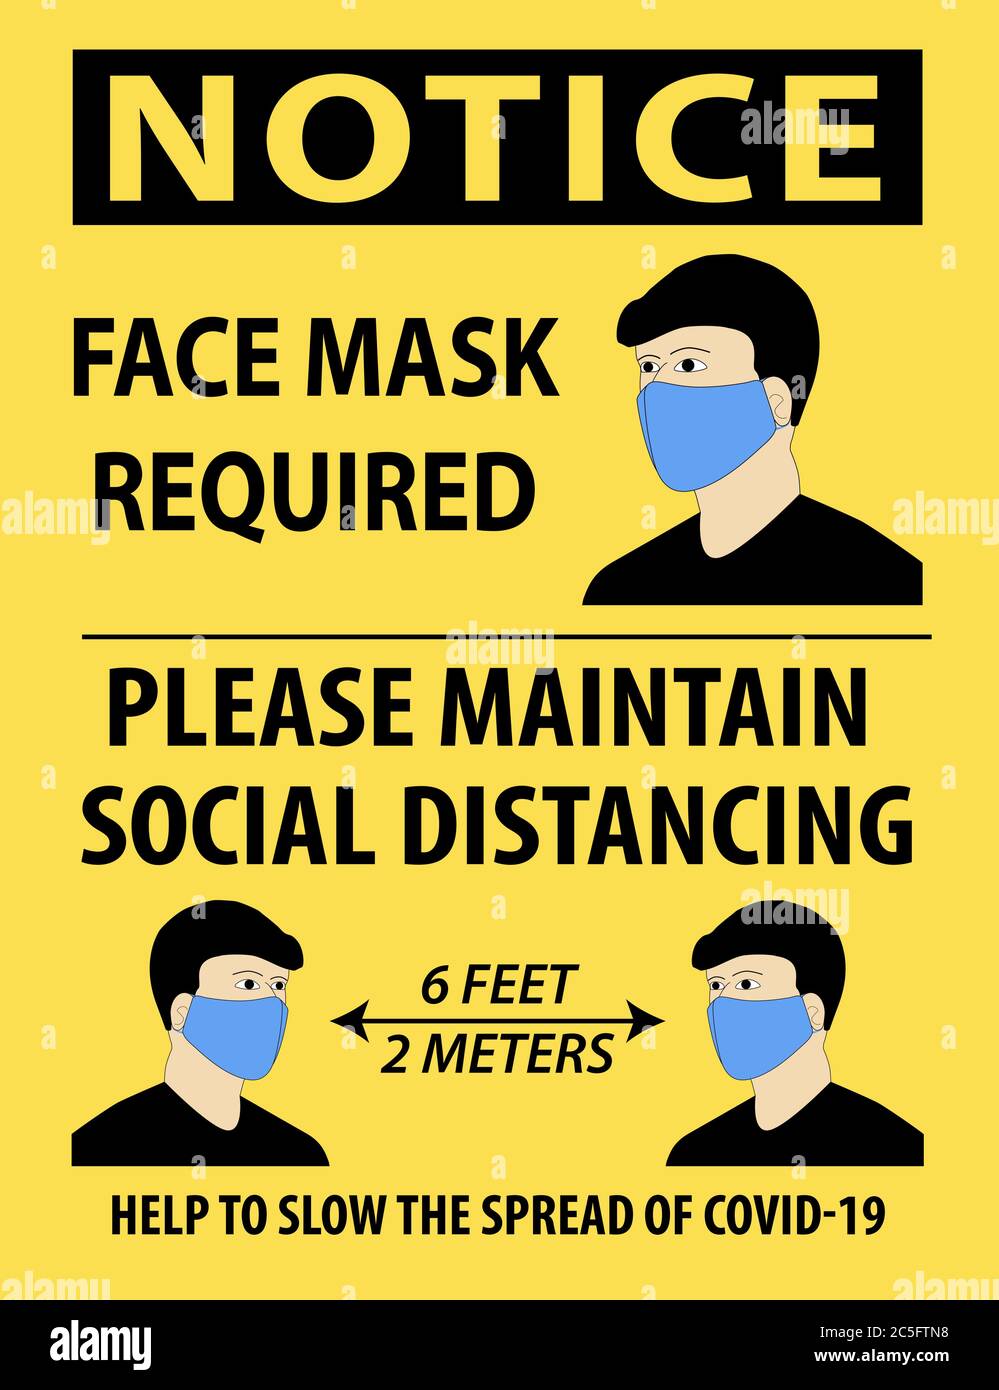 Illustrazione vettoriale della notifica, maschera facciale richiesta, mantenere la distanza sociale, con una persona indossare una maschera. Illustrazione Vettoriale